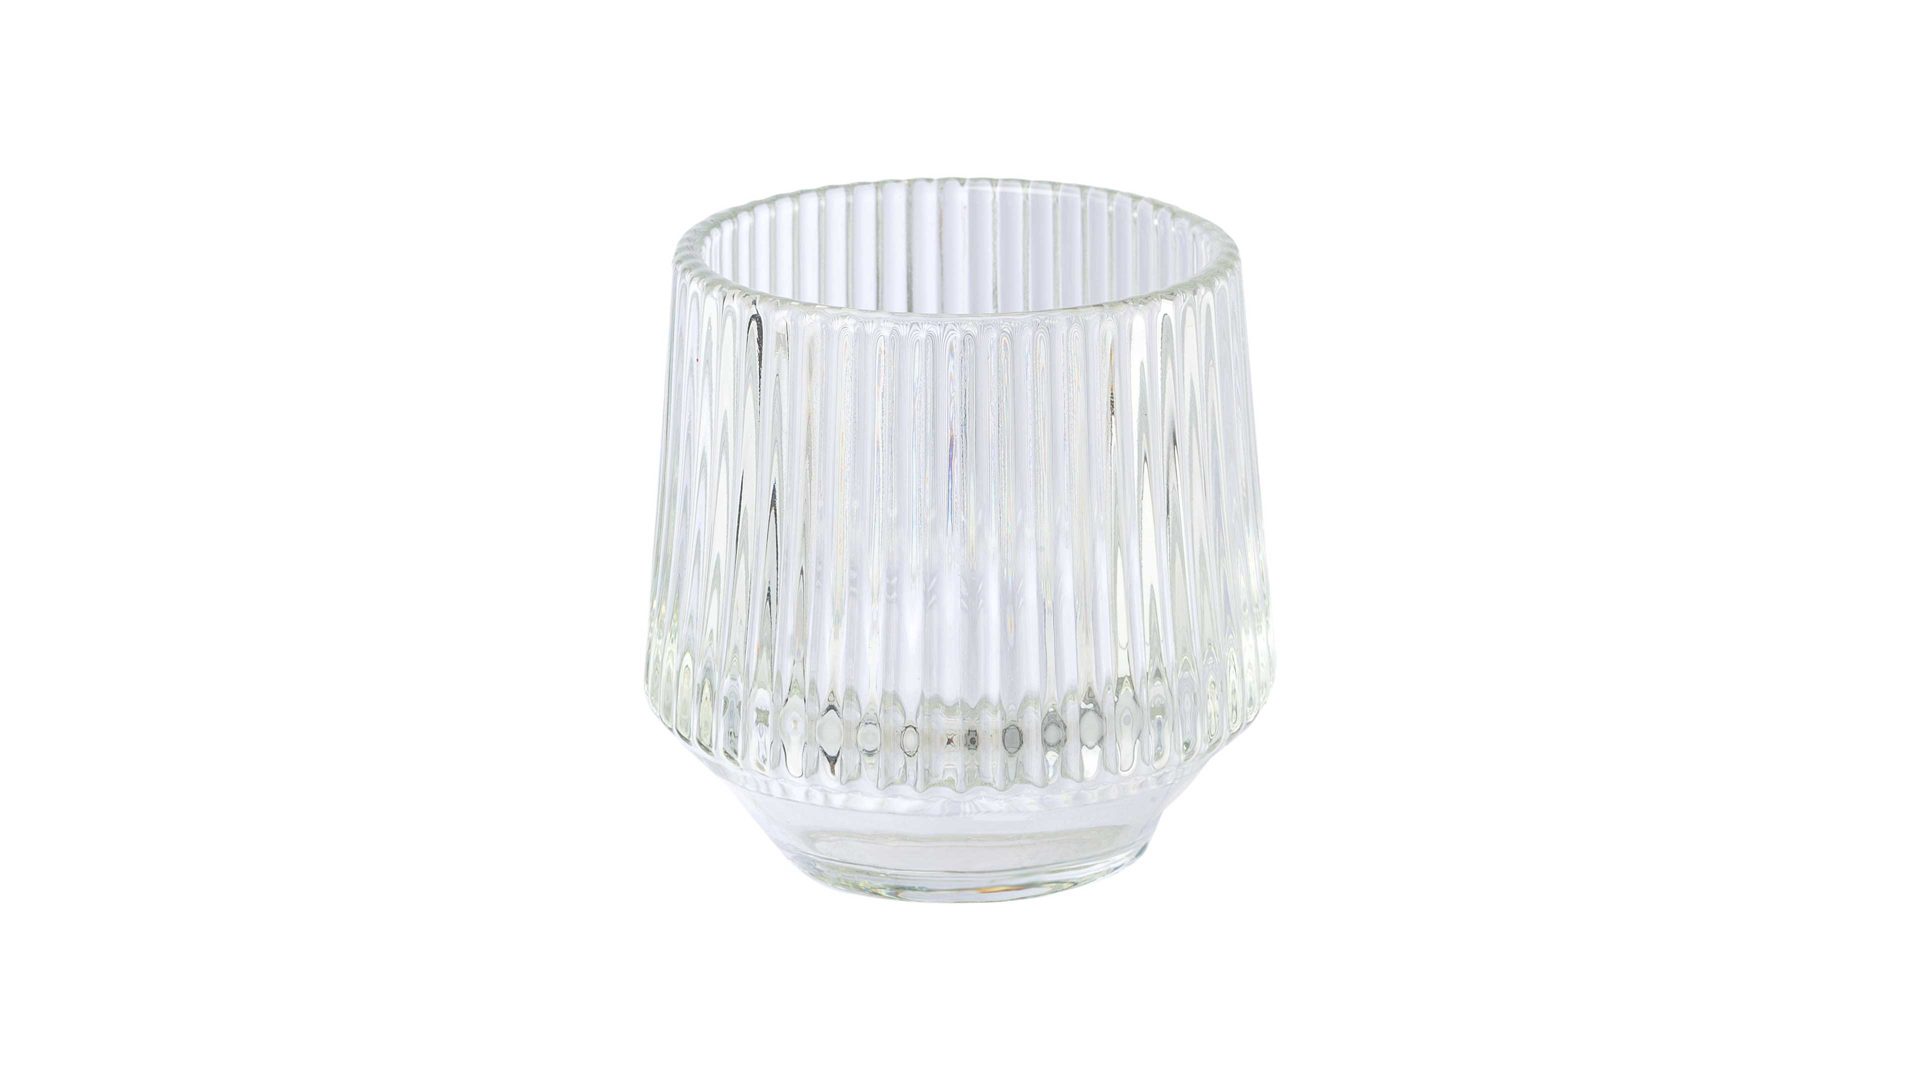 Windlicht Gasper aus Glas in Transparent Teelichtglas Tayra Klarglas - Höhe ca. 8 cm